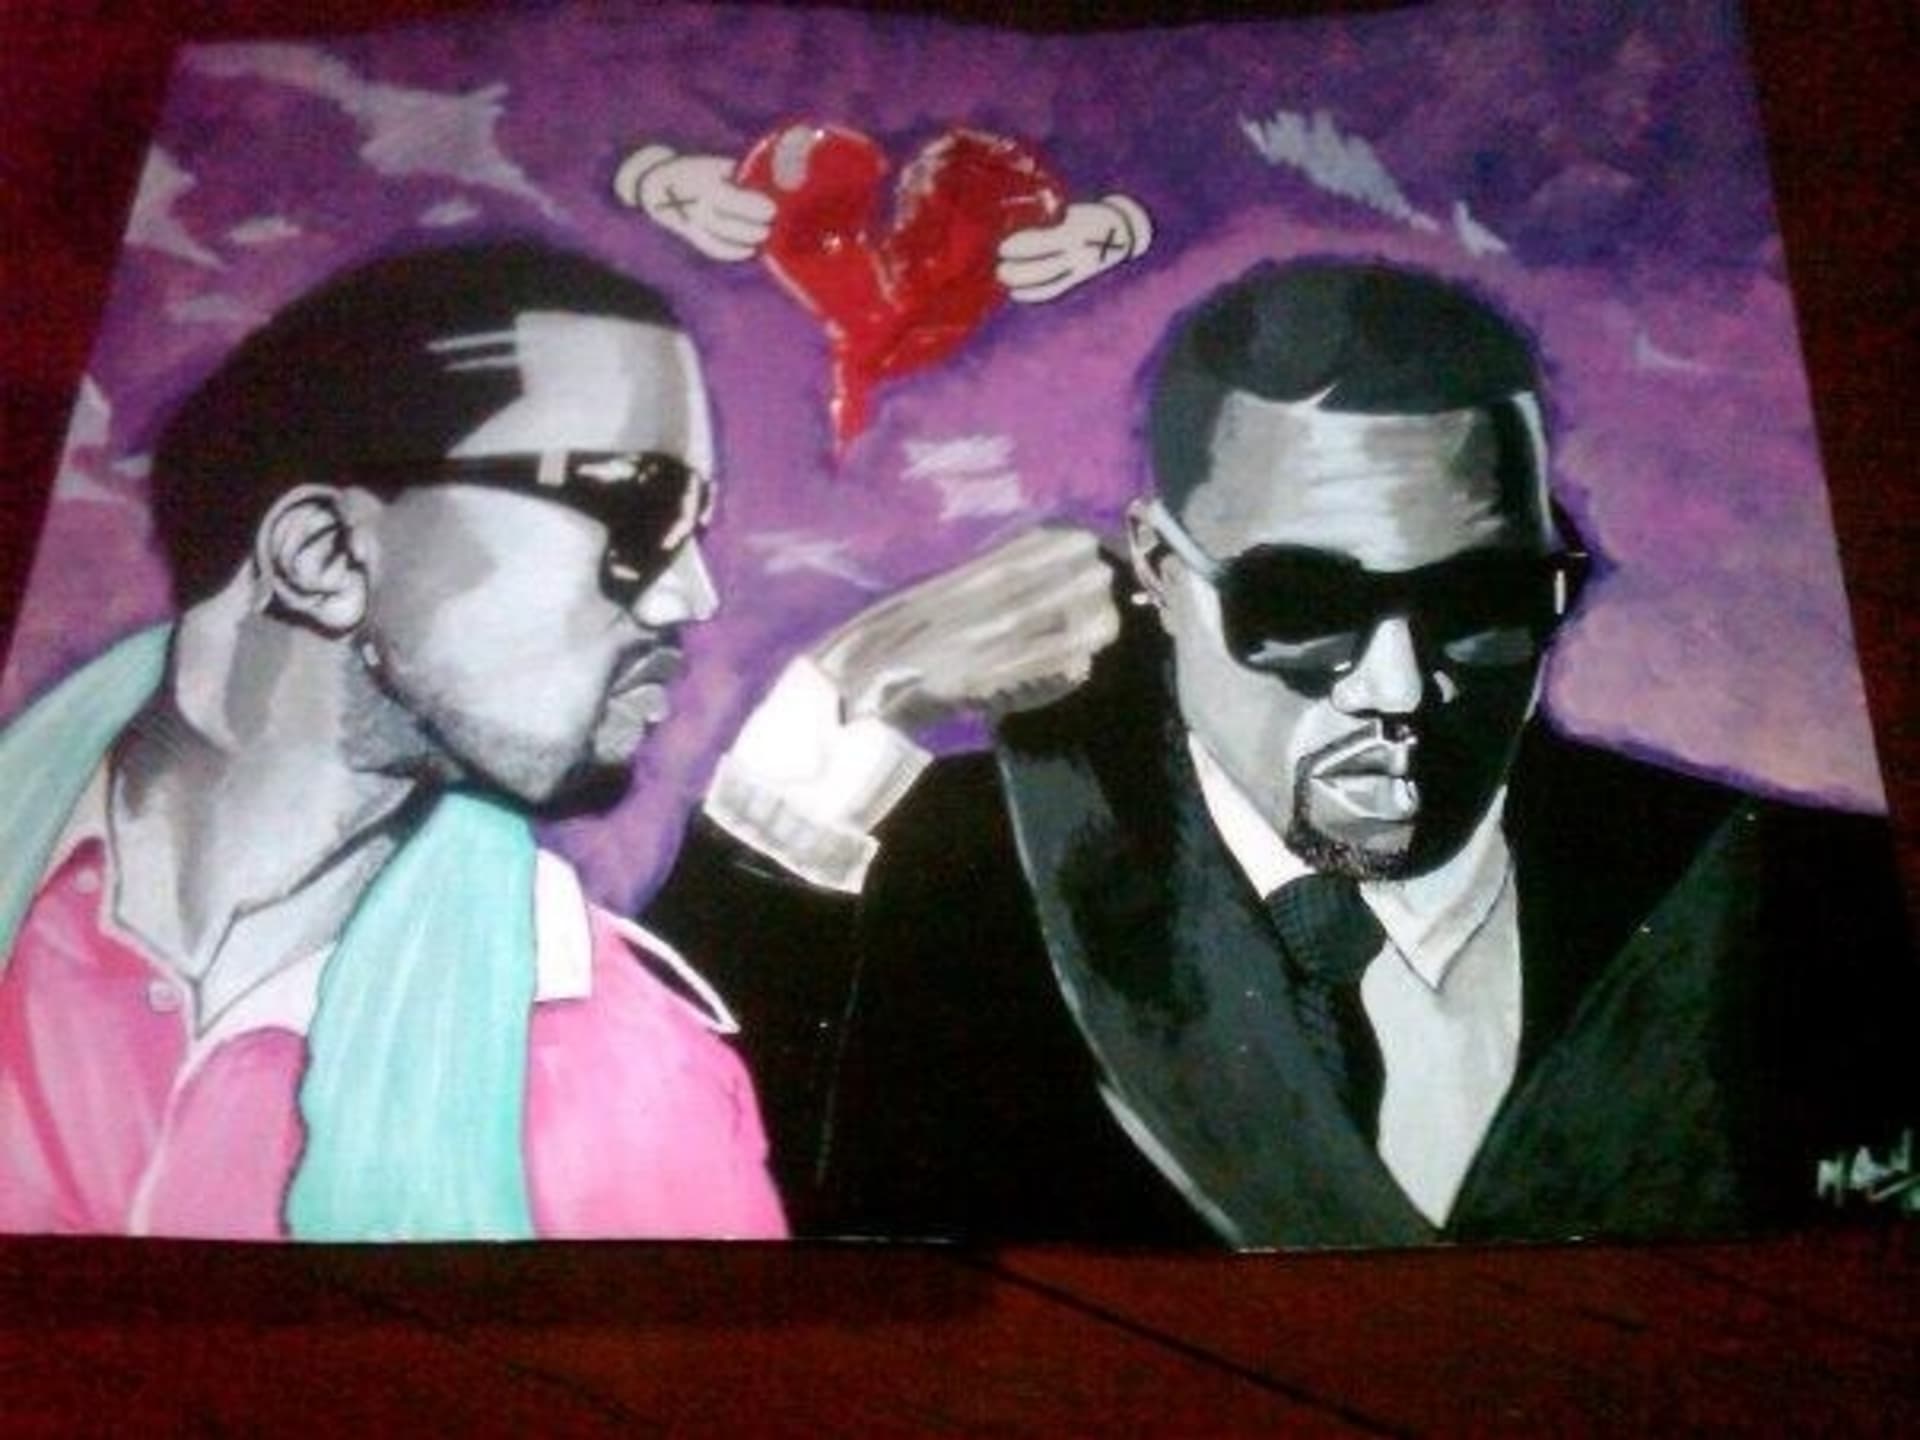 Kanye si nechal namalovat portrét, kterým ozdobil svůj dům